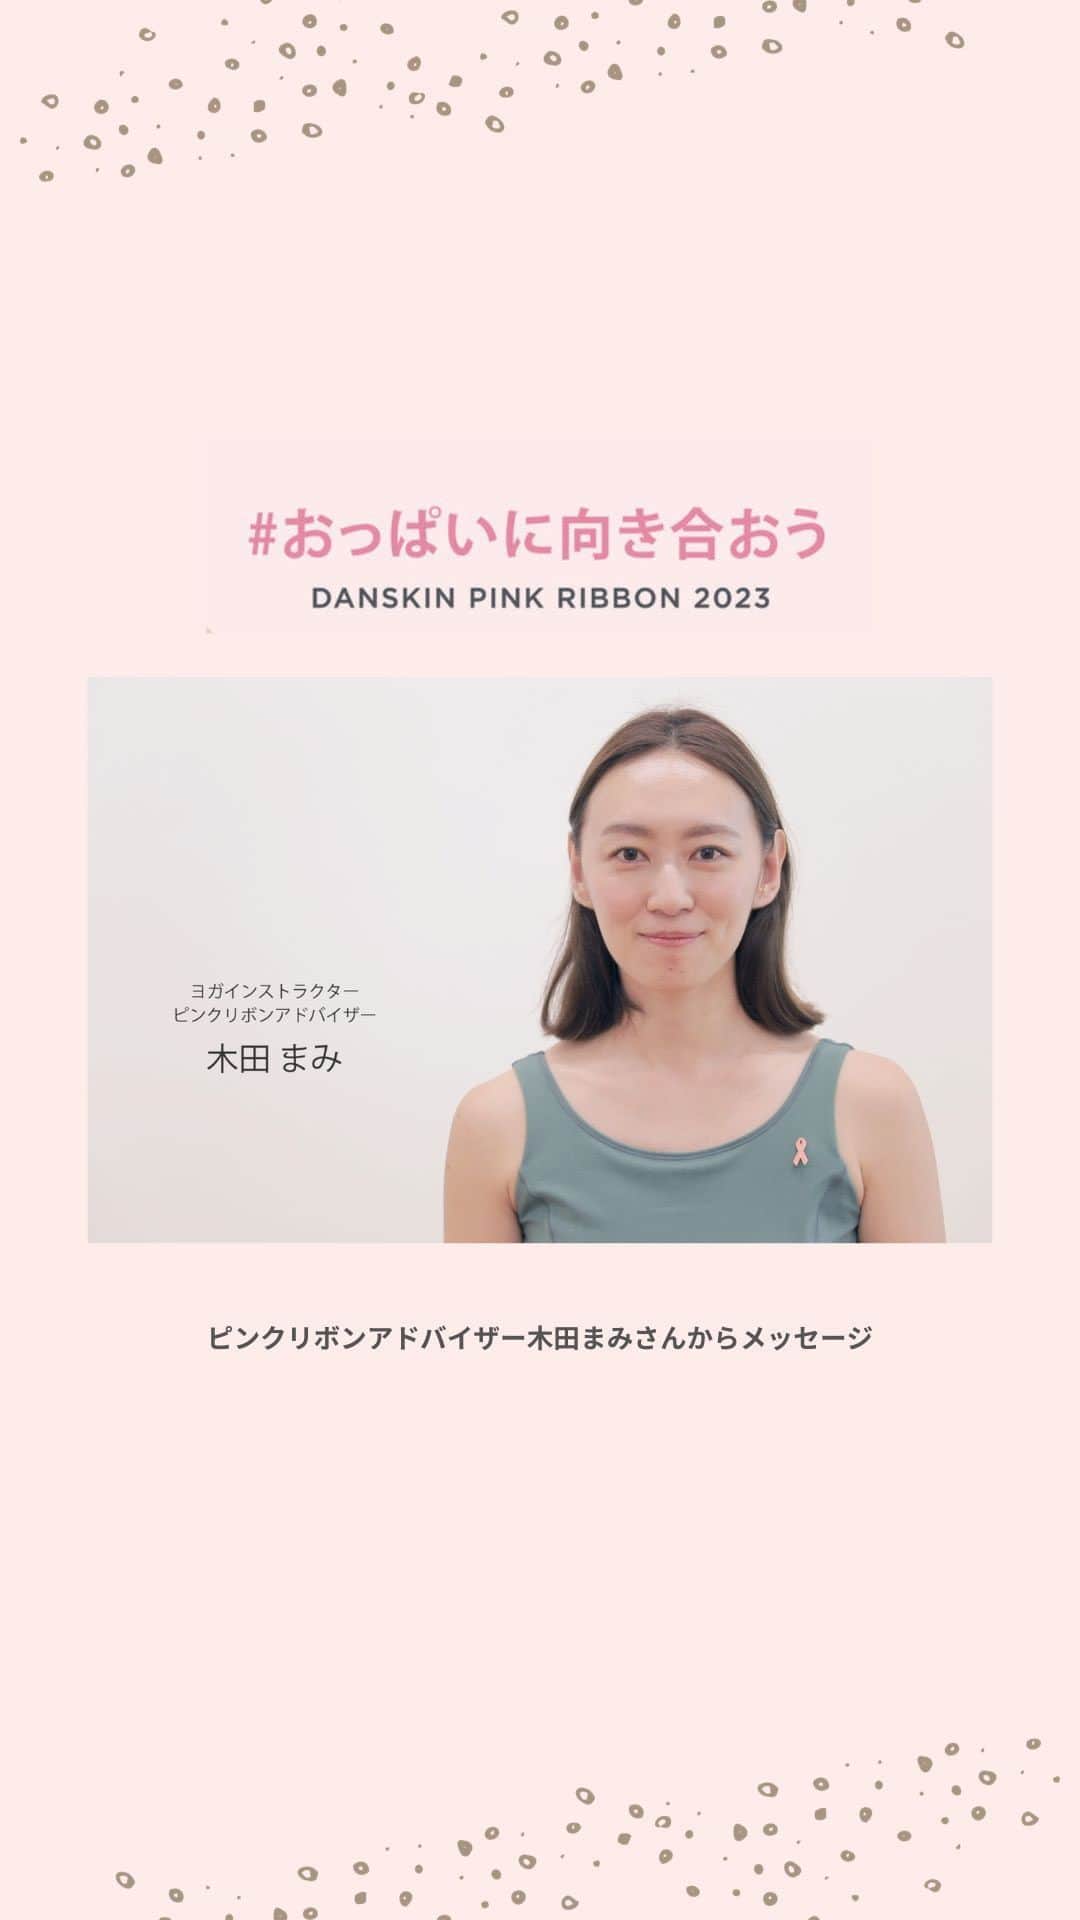 DANSKIN Japanのインスタグラム：「【PINK RIBBON】 ダンスキンアンバサダーであり、ピンクリボンアドバイザーである木田まみさん @mami_maulea によるメッセージをお届けします。  ─────  私は乳がんサバイバーです。  検診で乳がんが見つかったとき、 まさか自分が乳がんになるとは思ってもいませんでしたが、 自ら進んで検診したおかげで早期発見できたことを感謝しています。  検診とは自分の体を知ること。 私達が伝えたいのはがんの怖さではなく、知ることの大切さです。  ダンスキンは、スポーツのある生活やピンクリボン活動を通じて、 すべての女性の笑顔をサポートする存在でありたいと願っています。  ─────  ダンスキンブランドサイトではピンクリボン特集を公開中です。プロフィールTOPのURLよりぜひご覧ください。  #danskin #danskinjapan #ダンスキン #こころとからだ #わたしを生きる #おっぱいに向き合おう #ピンクリボン #ピンクリボン2023」